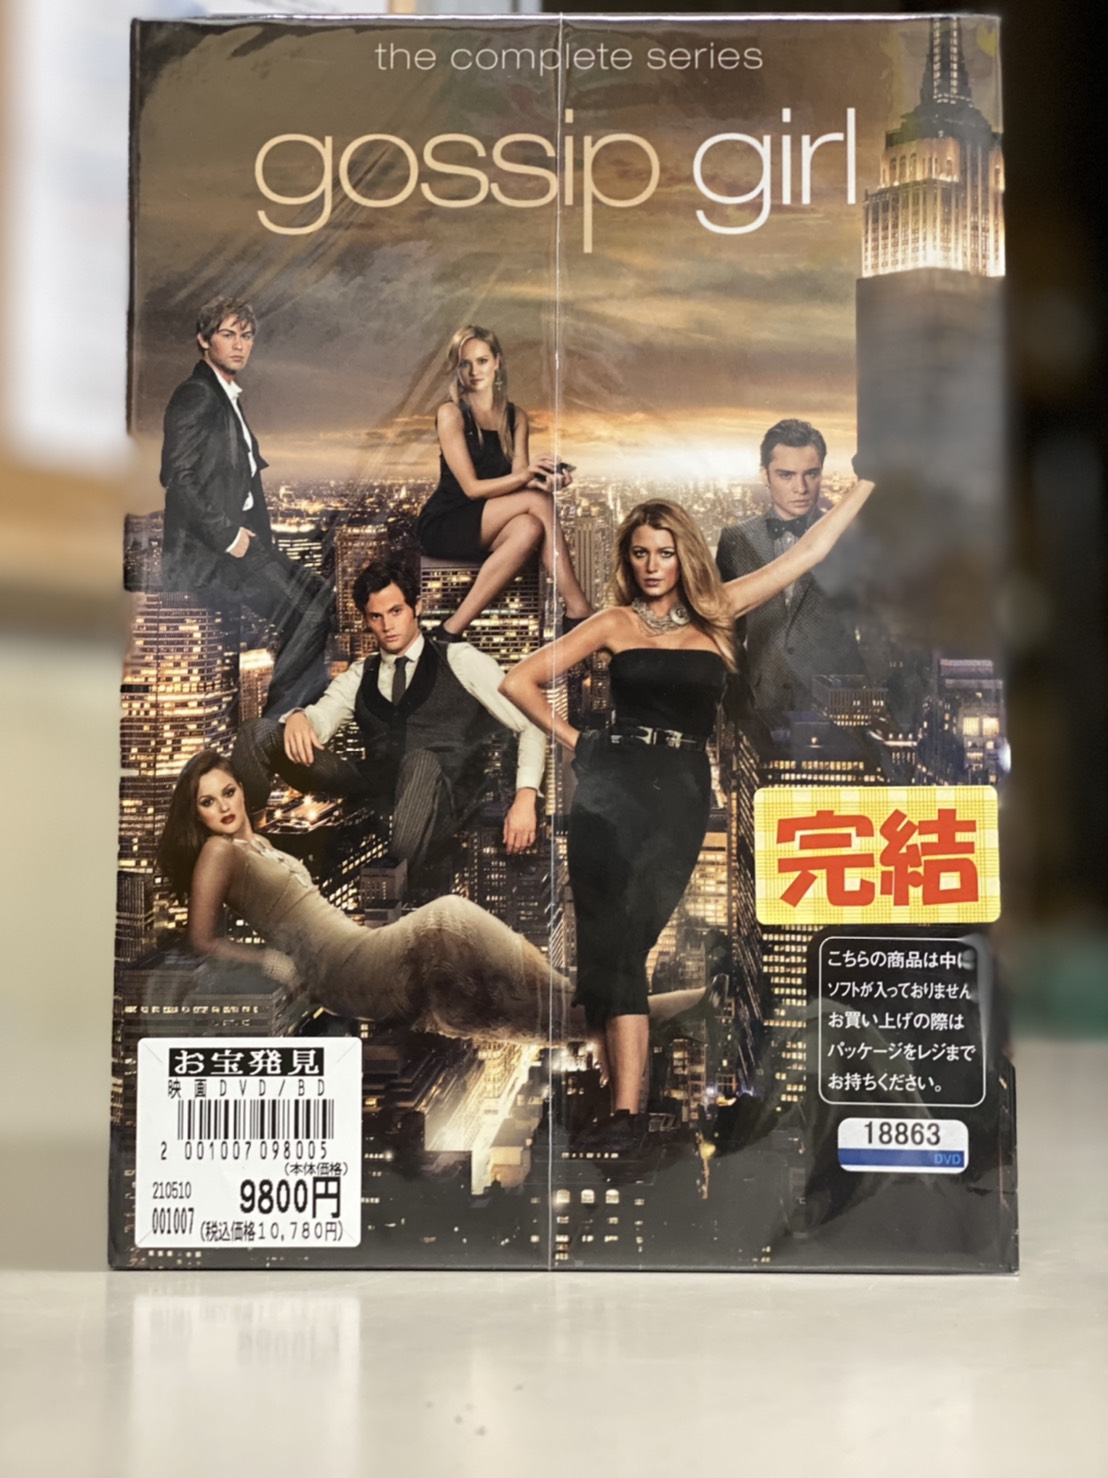 テレビで話題 gossip girl ゴシップガール DVDセット ecousarecycling.com